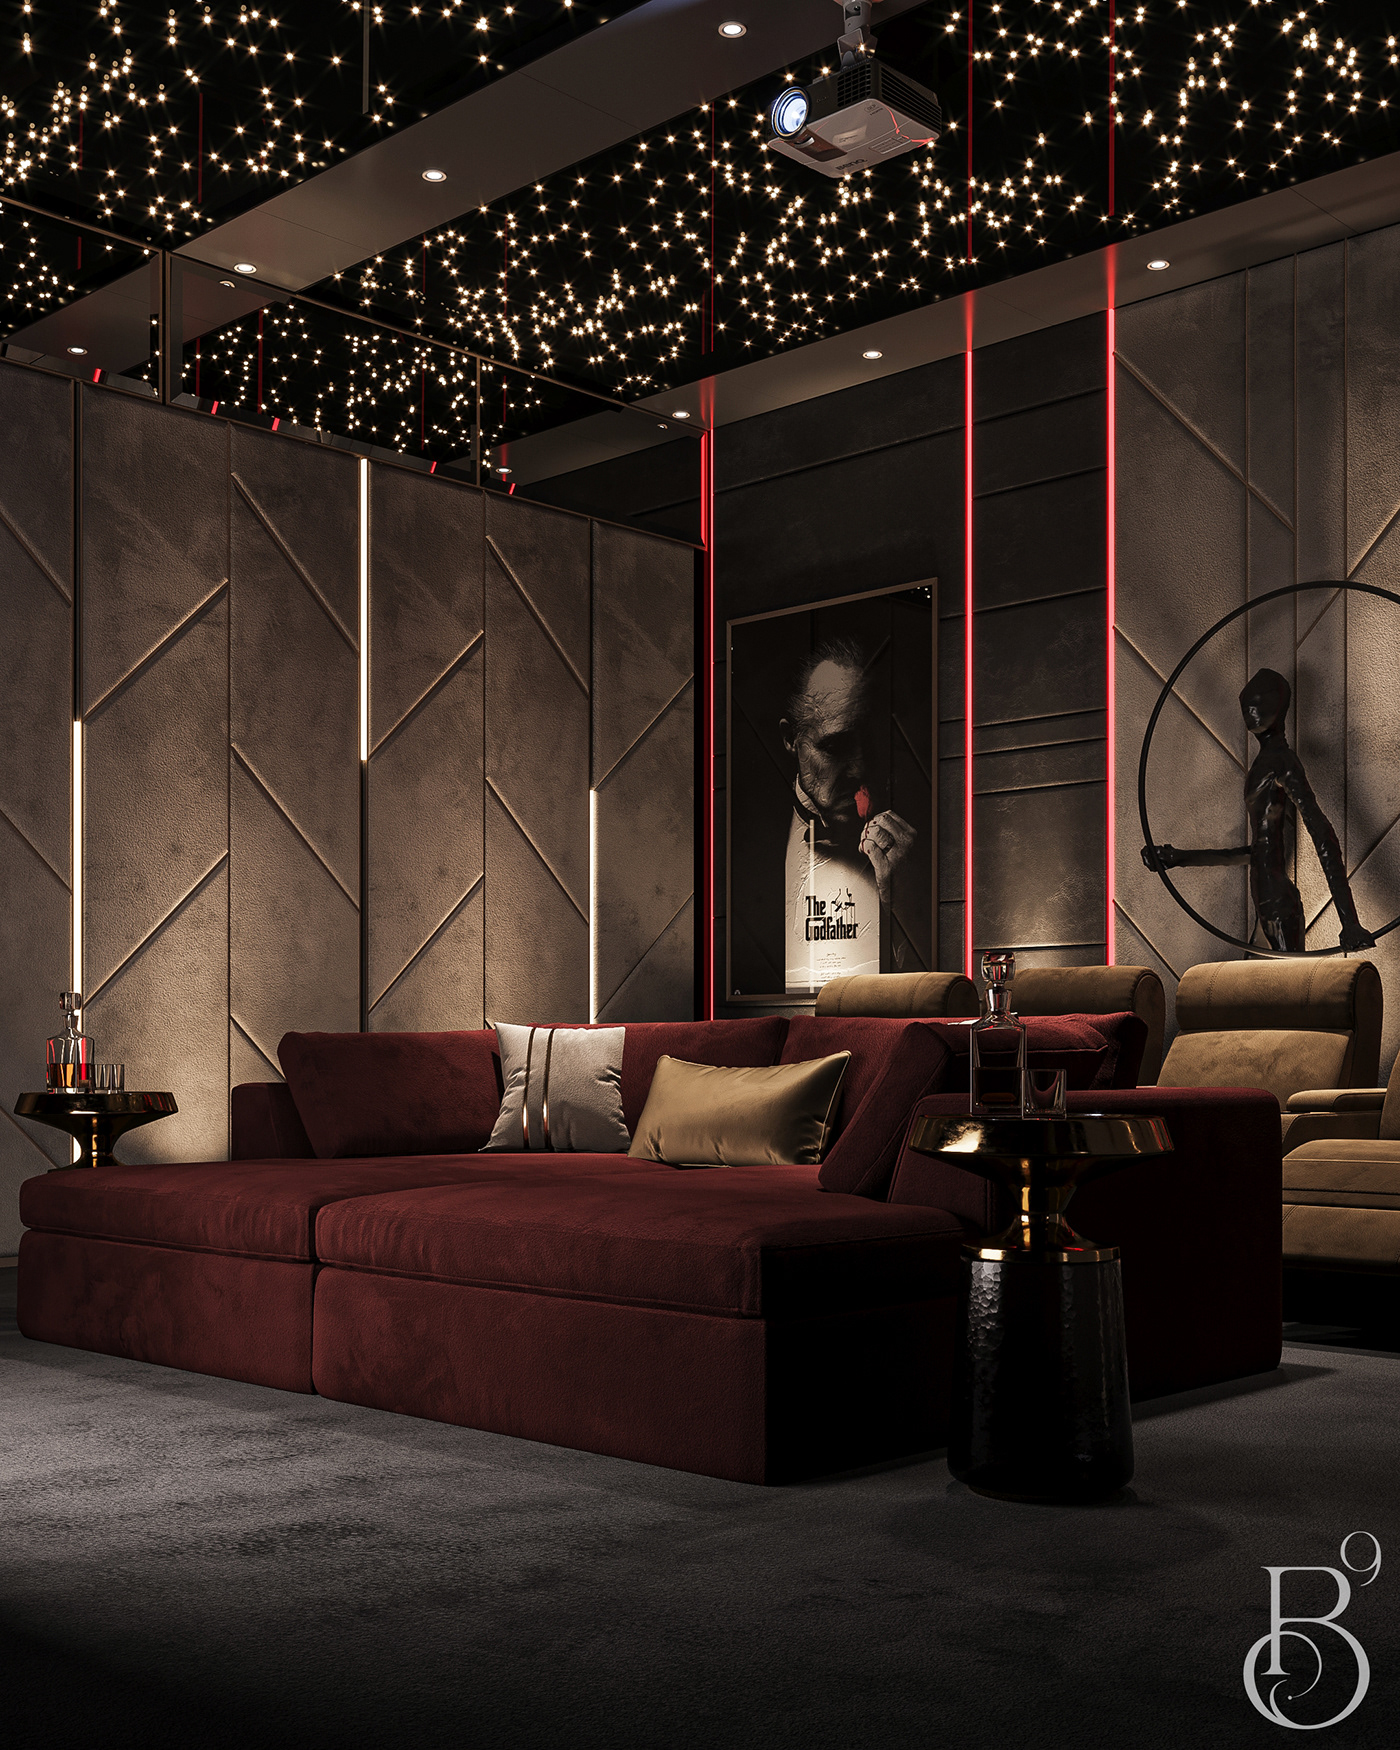 cinemaroom livingroom Interior luxury luxurydesign interiordesign Render interior design  3ds max corona